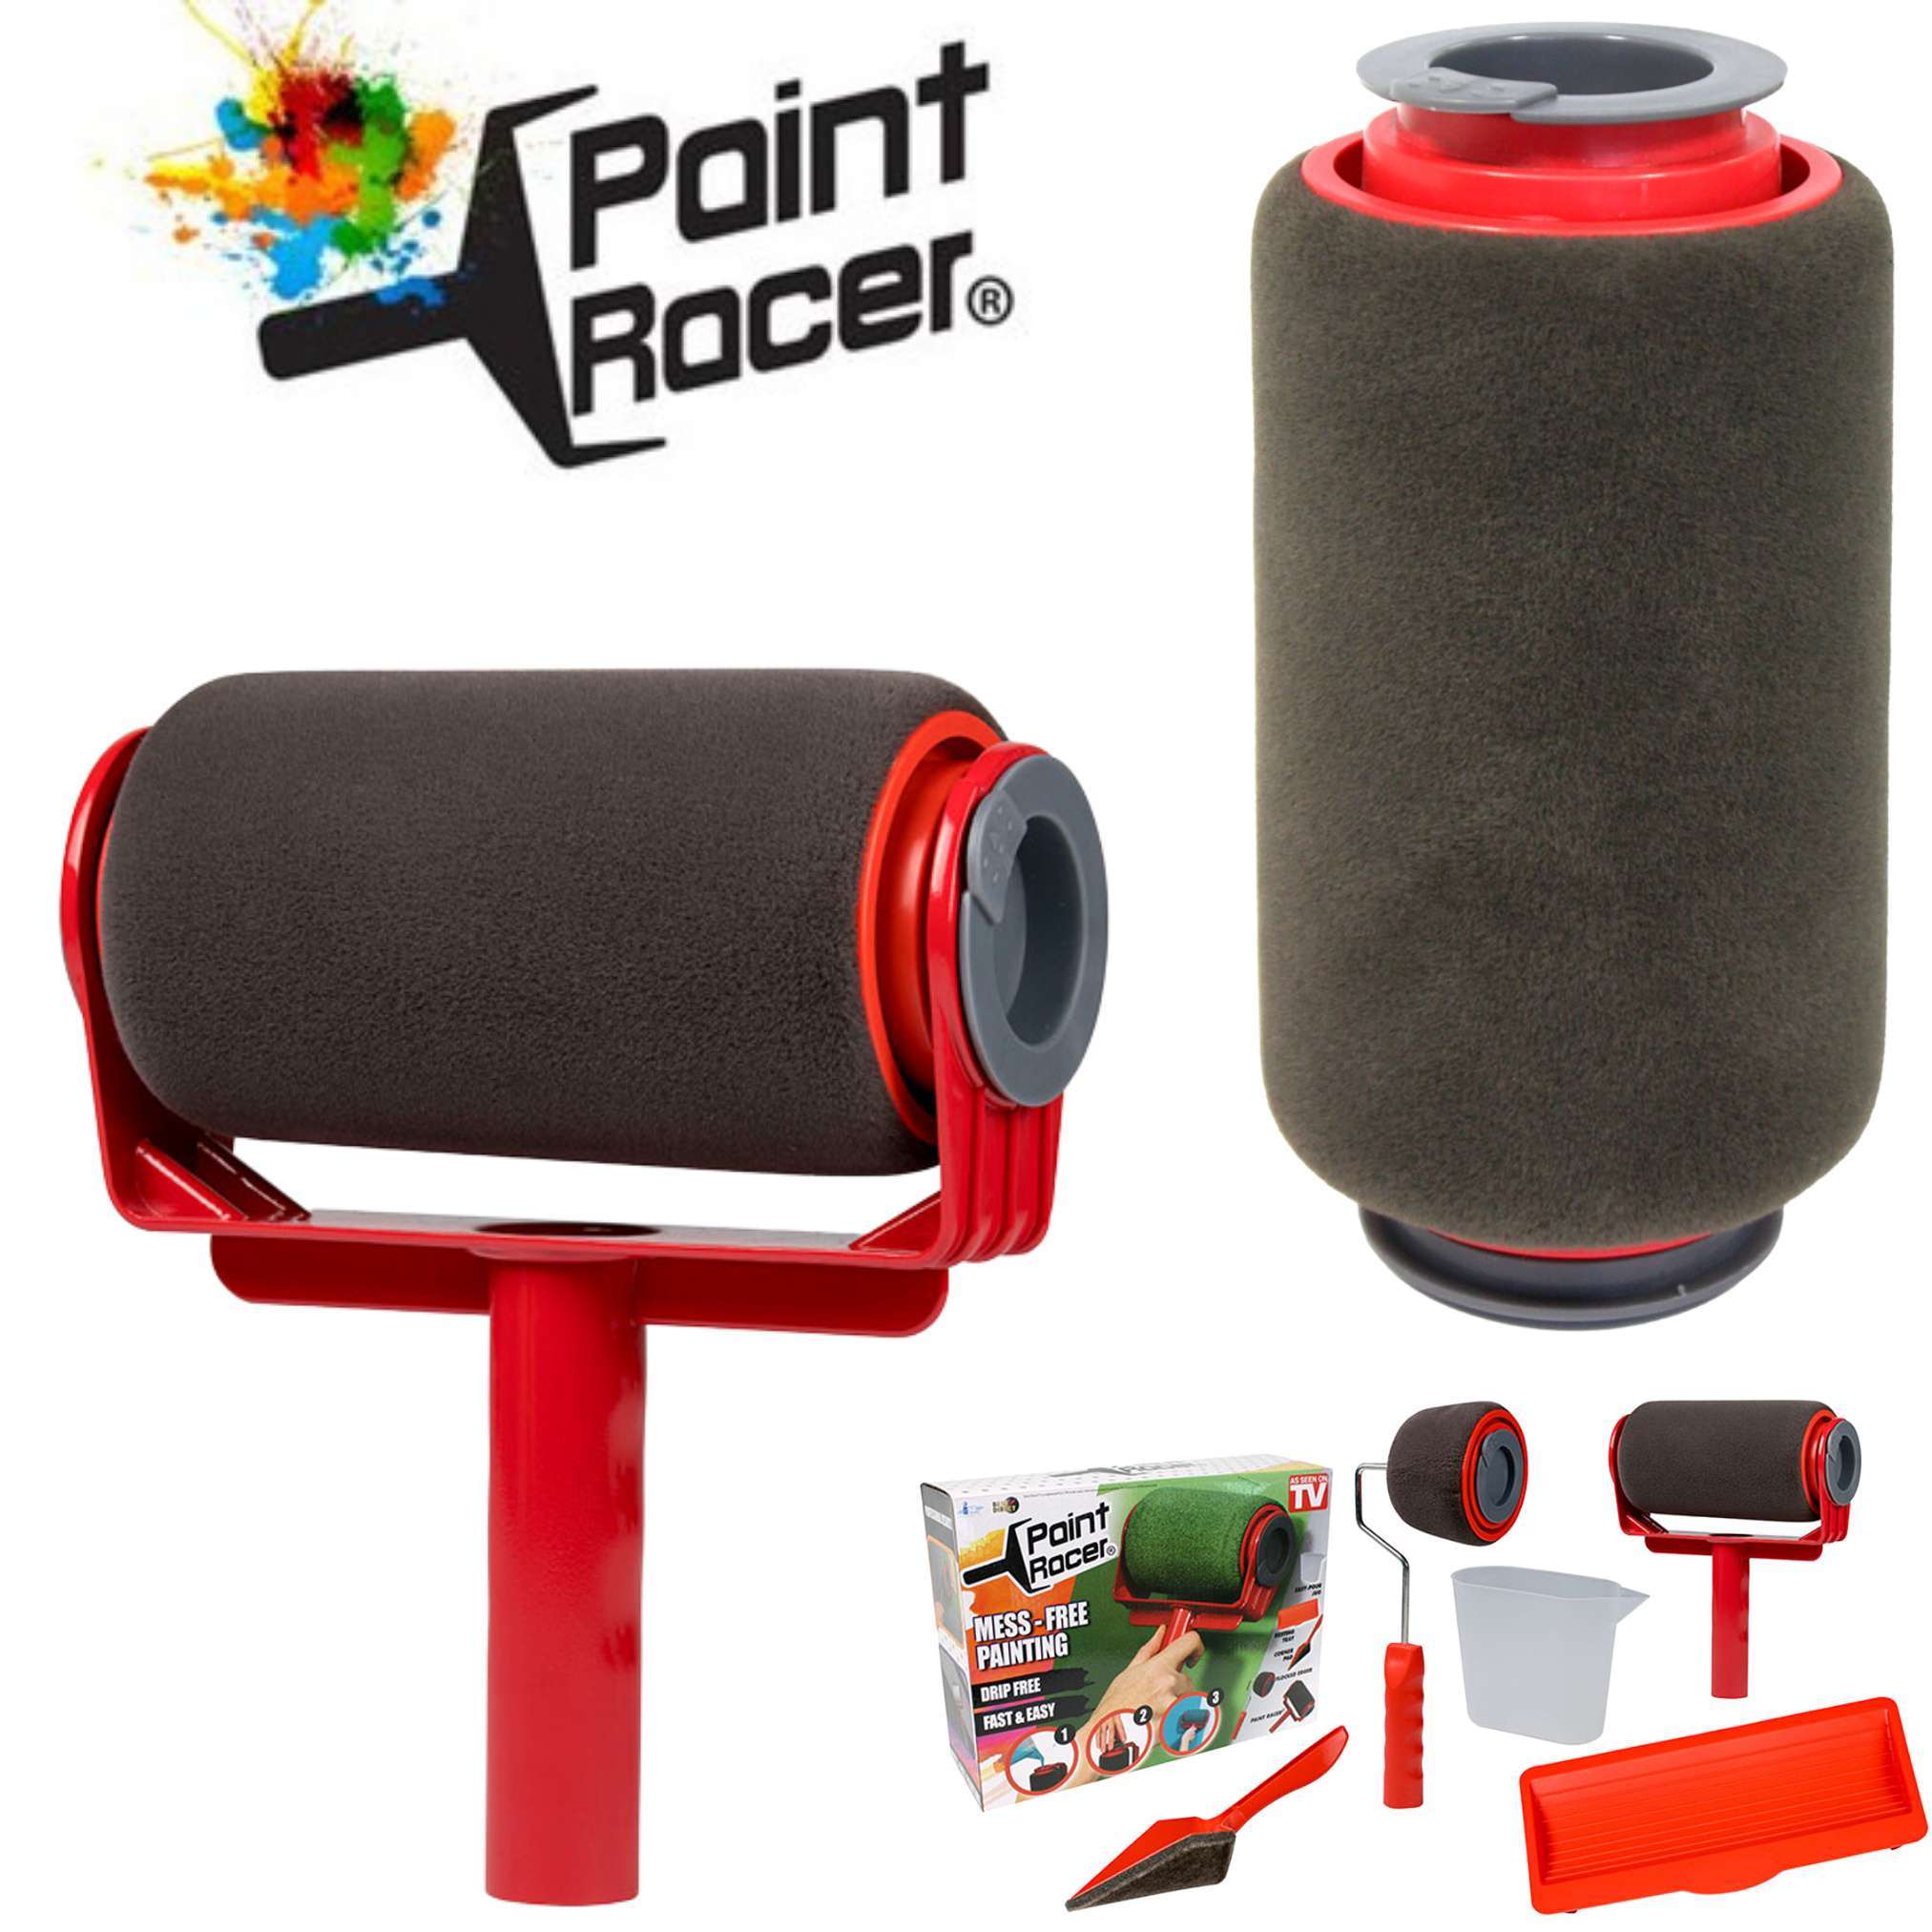 Paint Racer® befüllbarer Farbroller inkl